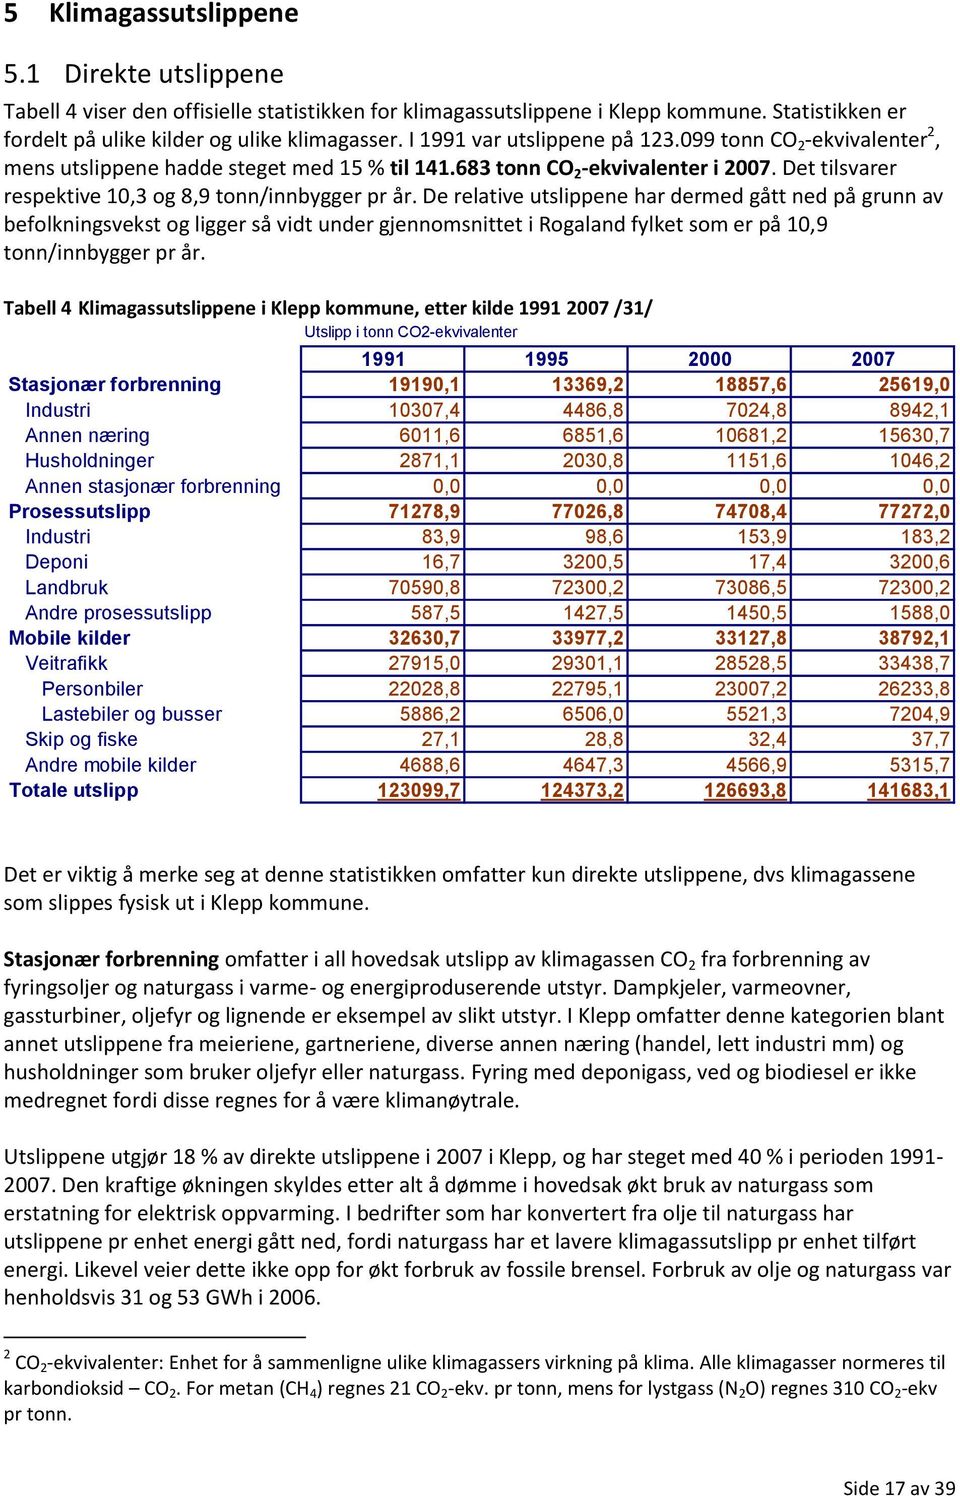 De relative utslippene har dermed gått ned på grunn av befolkningsvekst og ligger så vidt under gjennomsnittet i Rogaland fylket som er på 10,9 tonn/innbygger pr år.